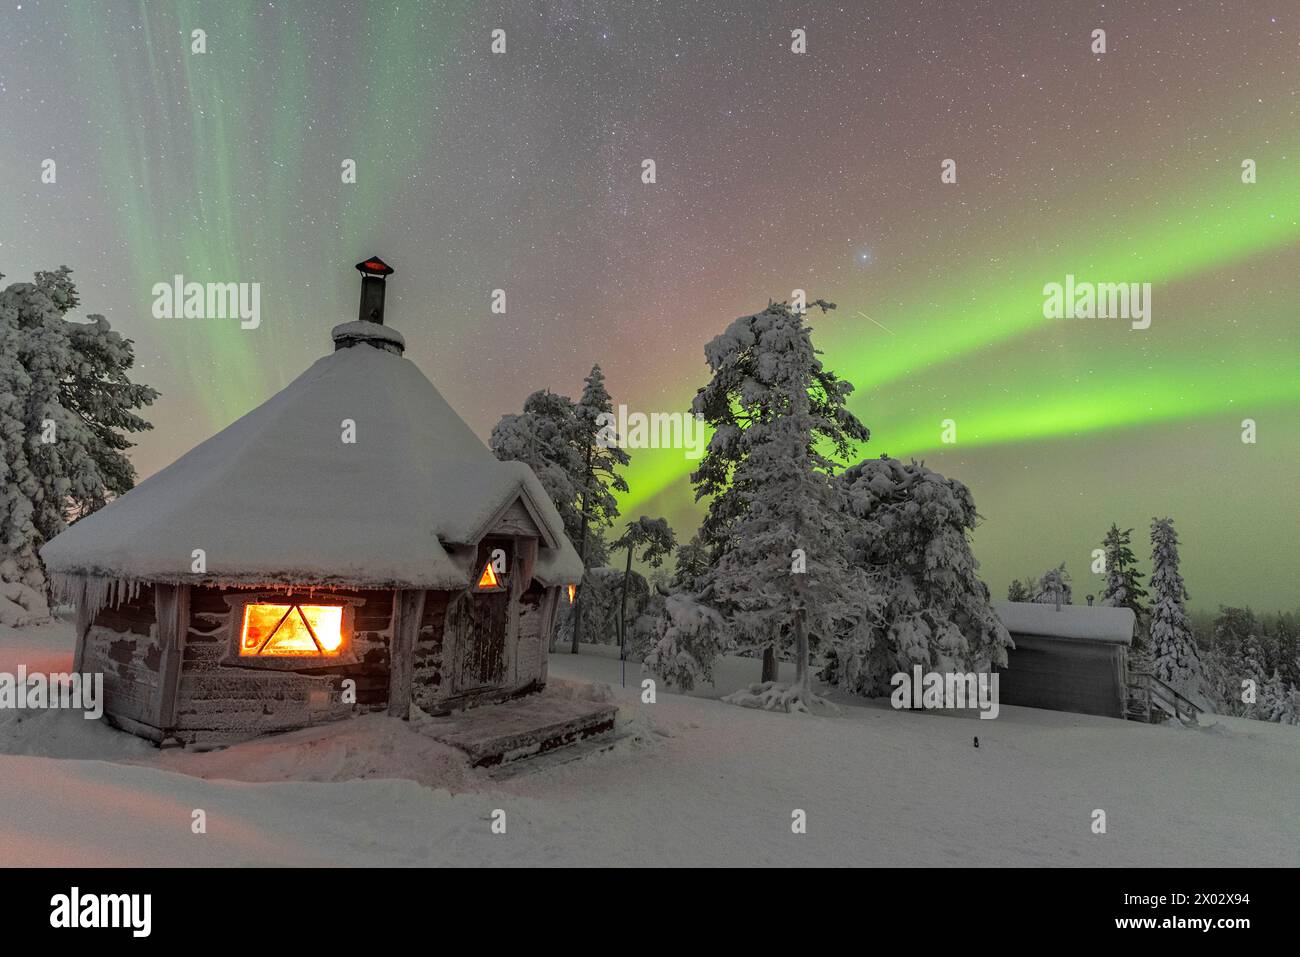 Sfumature di verde colorano l'aurora boreale (Aurora Boreale) sopra un paesaggio innevato con una tipica capanna illuminata da un fuoco all'interno in primo piano Foto Stock